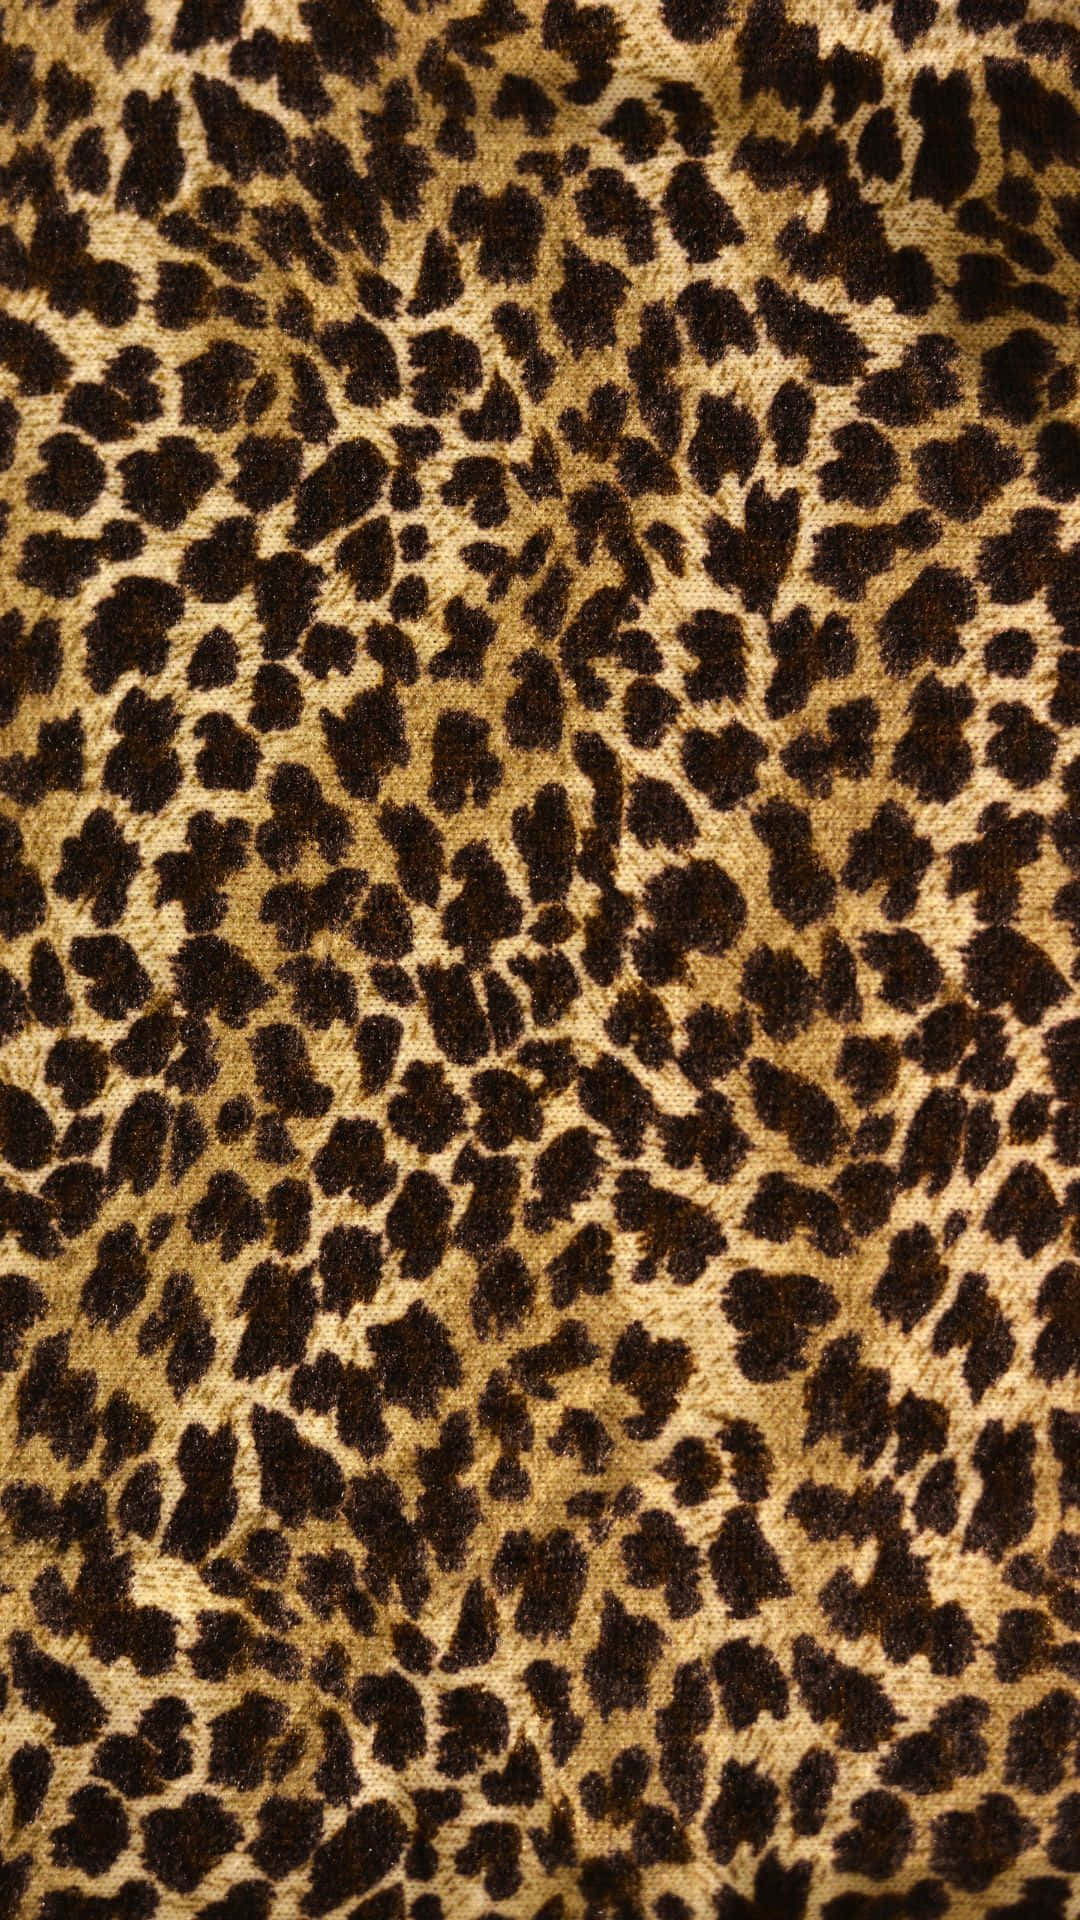 Unprimo Piano Di Un Tessuto A Stampa Di Leopardo